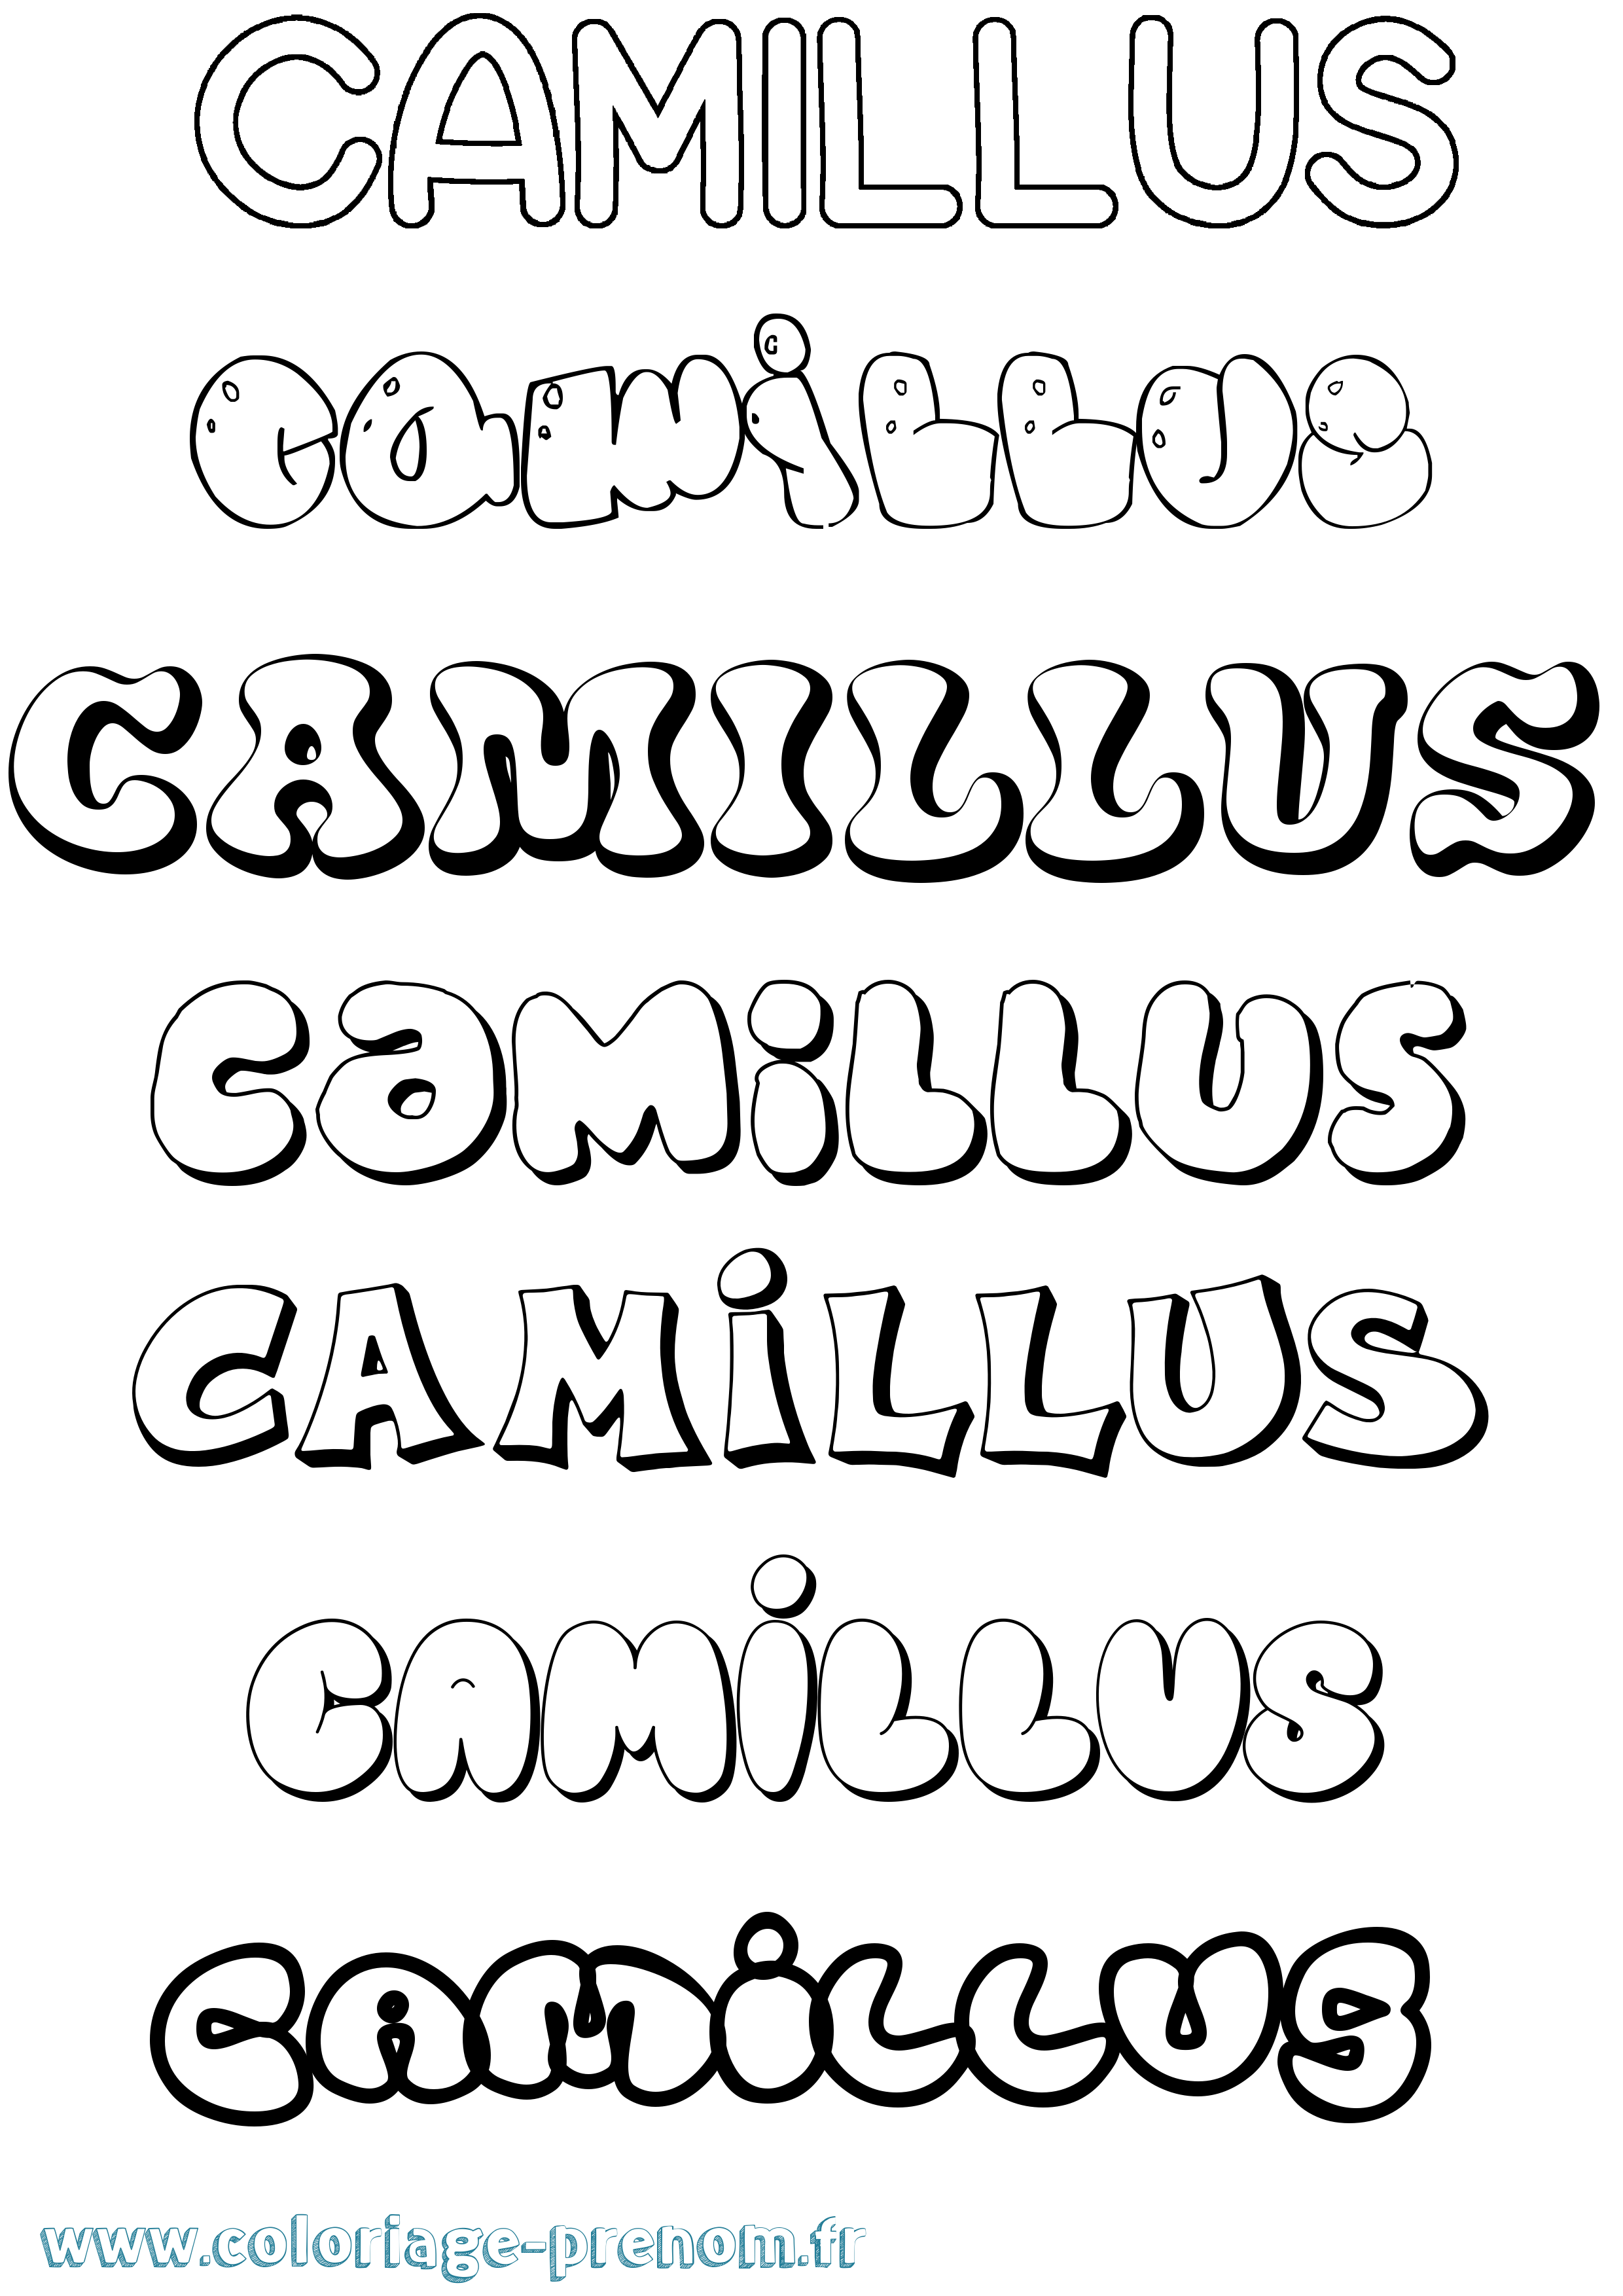 Coloriage prénom Camillus Bubble